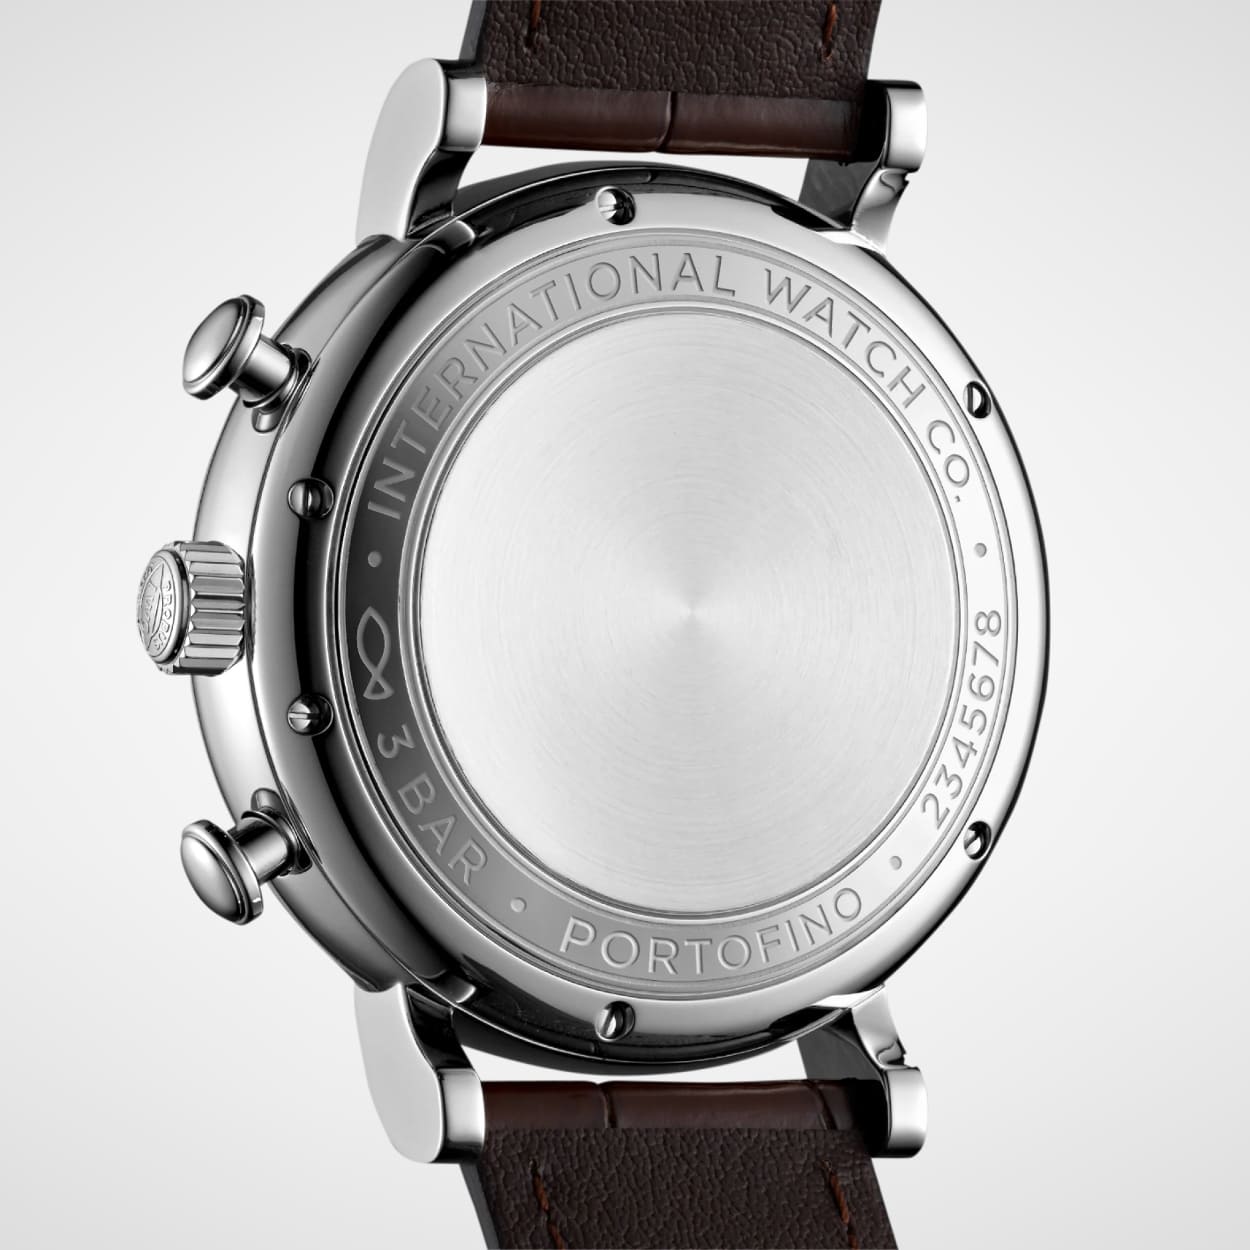 Rueckseite der IWC Portofino Chronograph mit verschlossenem Gehaeuseboden aus Edelstahl